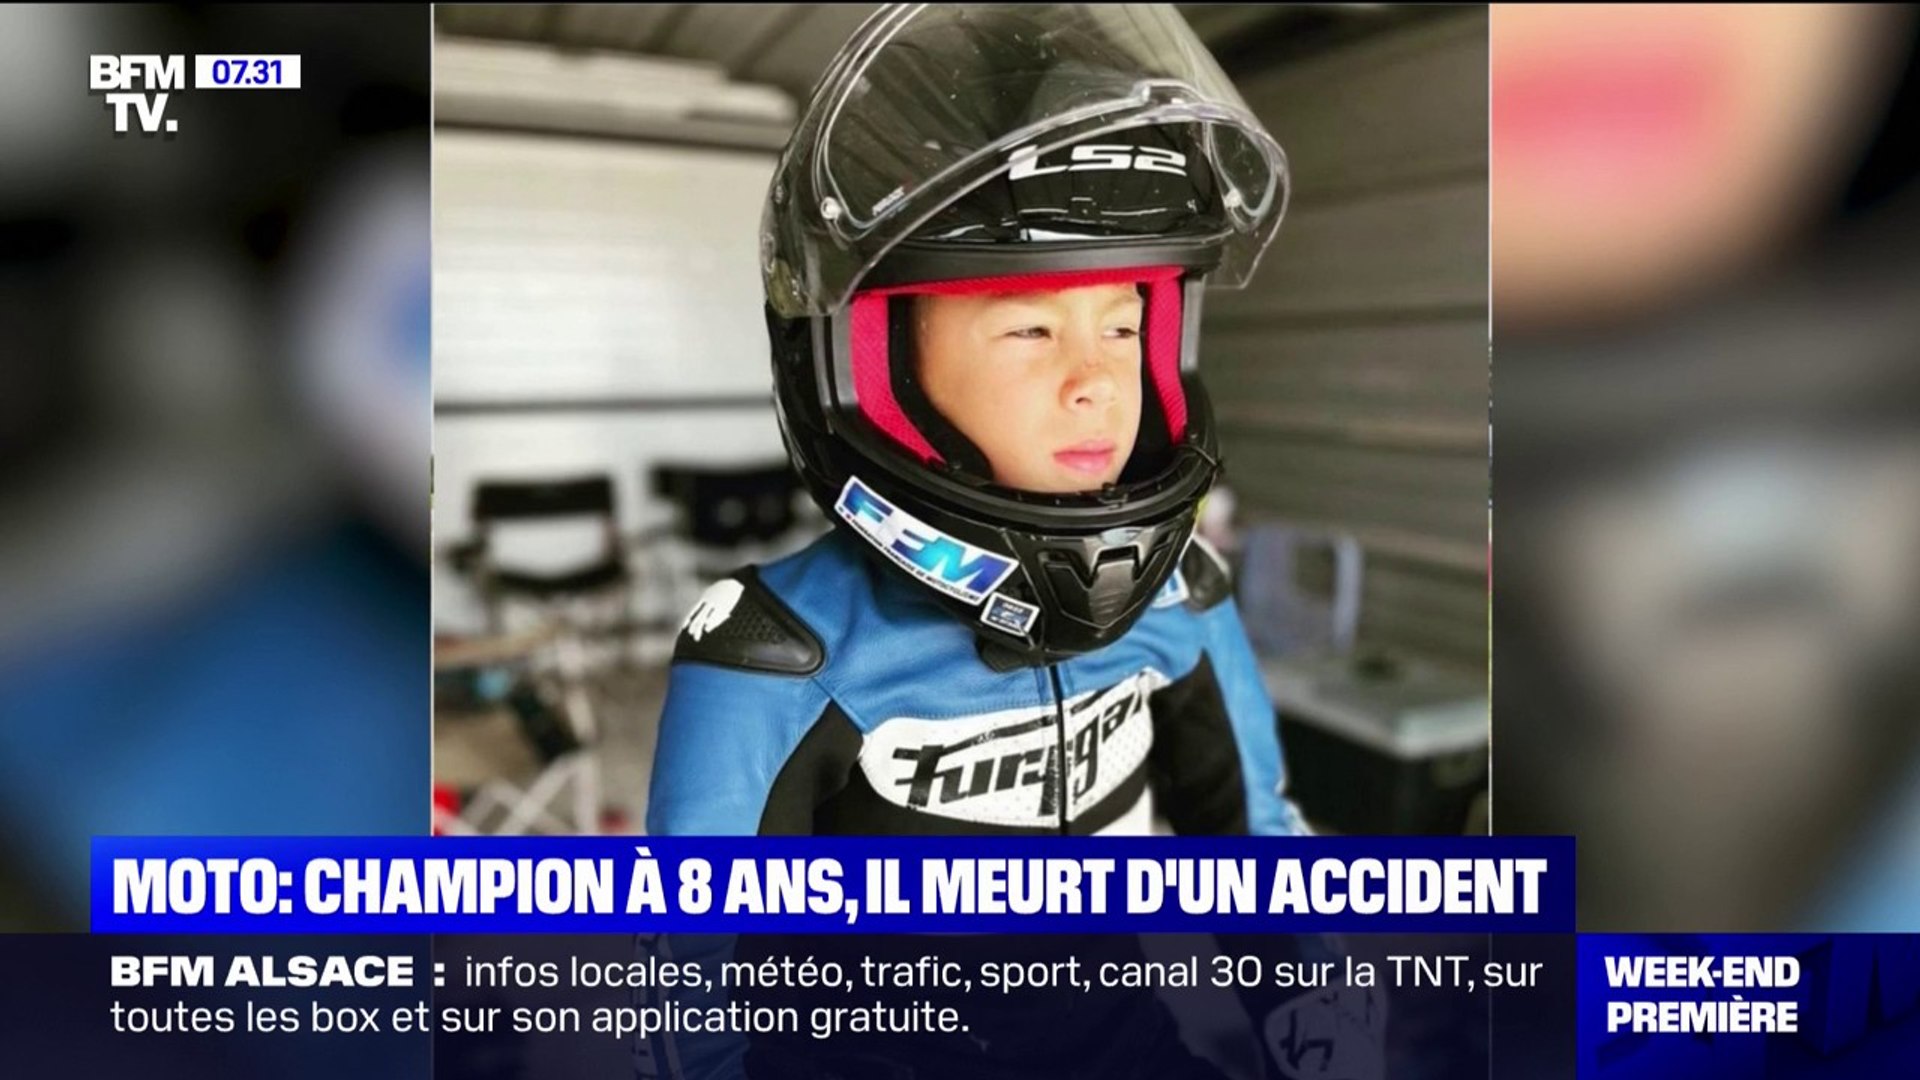 Le champion de moto Mathis Bellon, 8 ans, est mort après son accident -  Vidéo Dailymotion